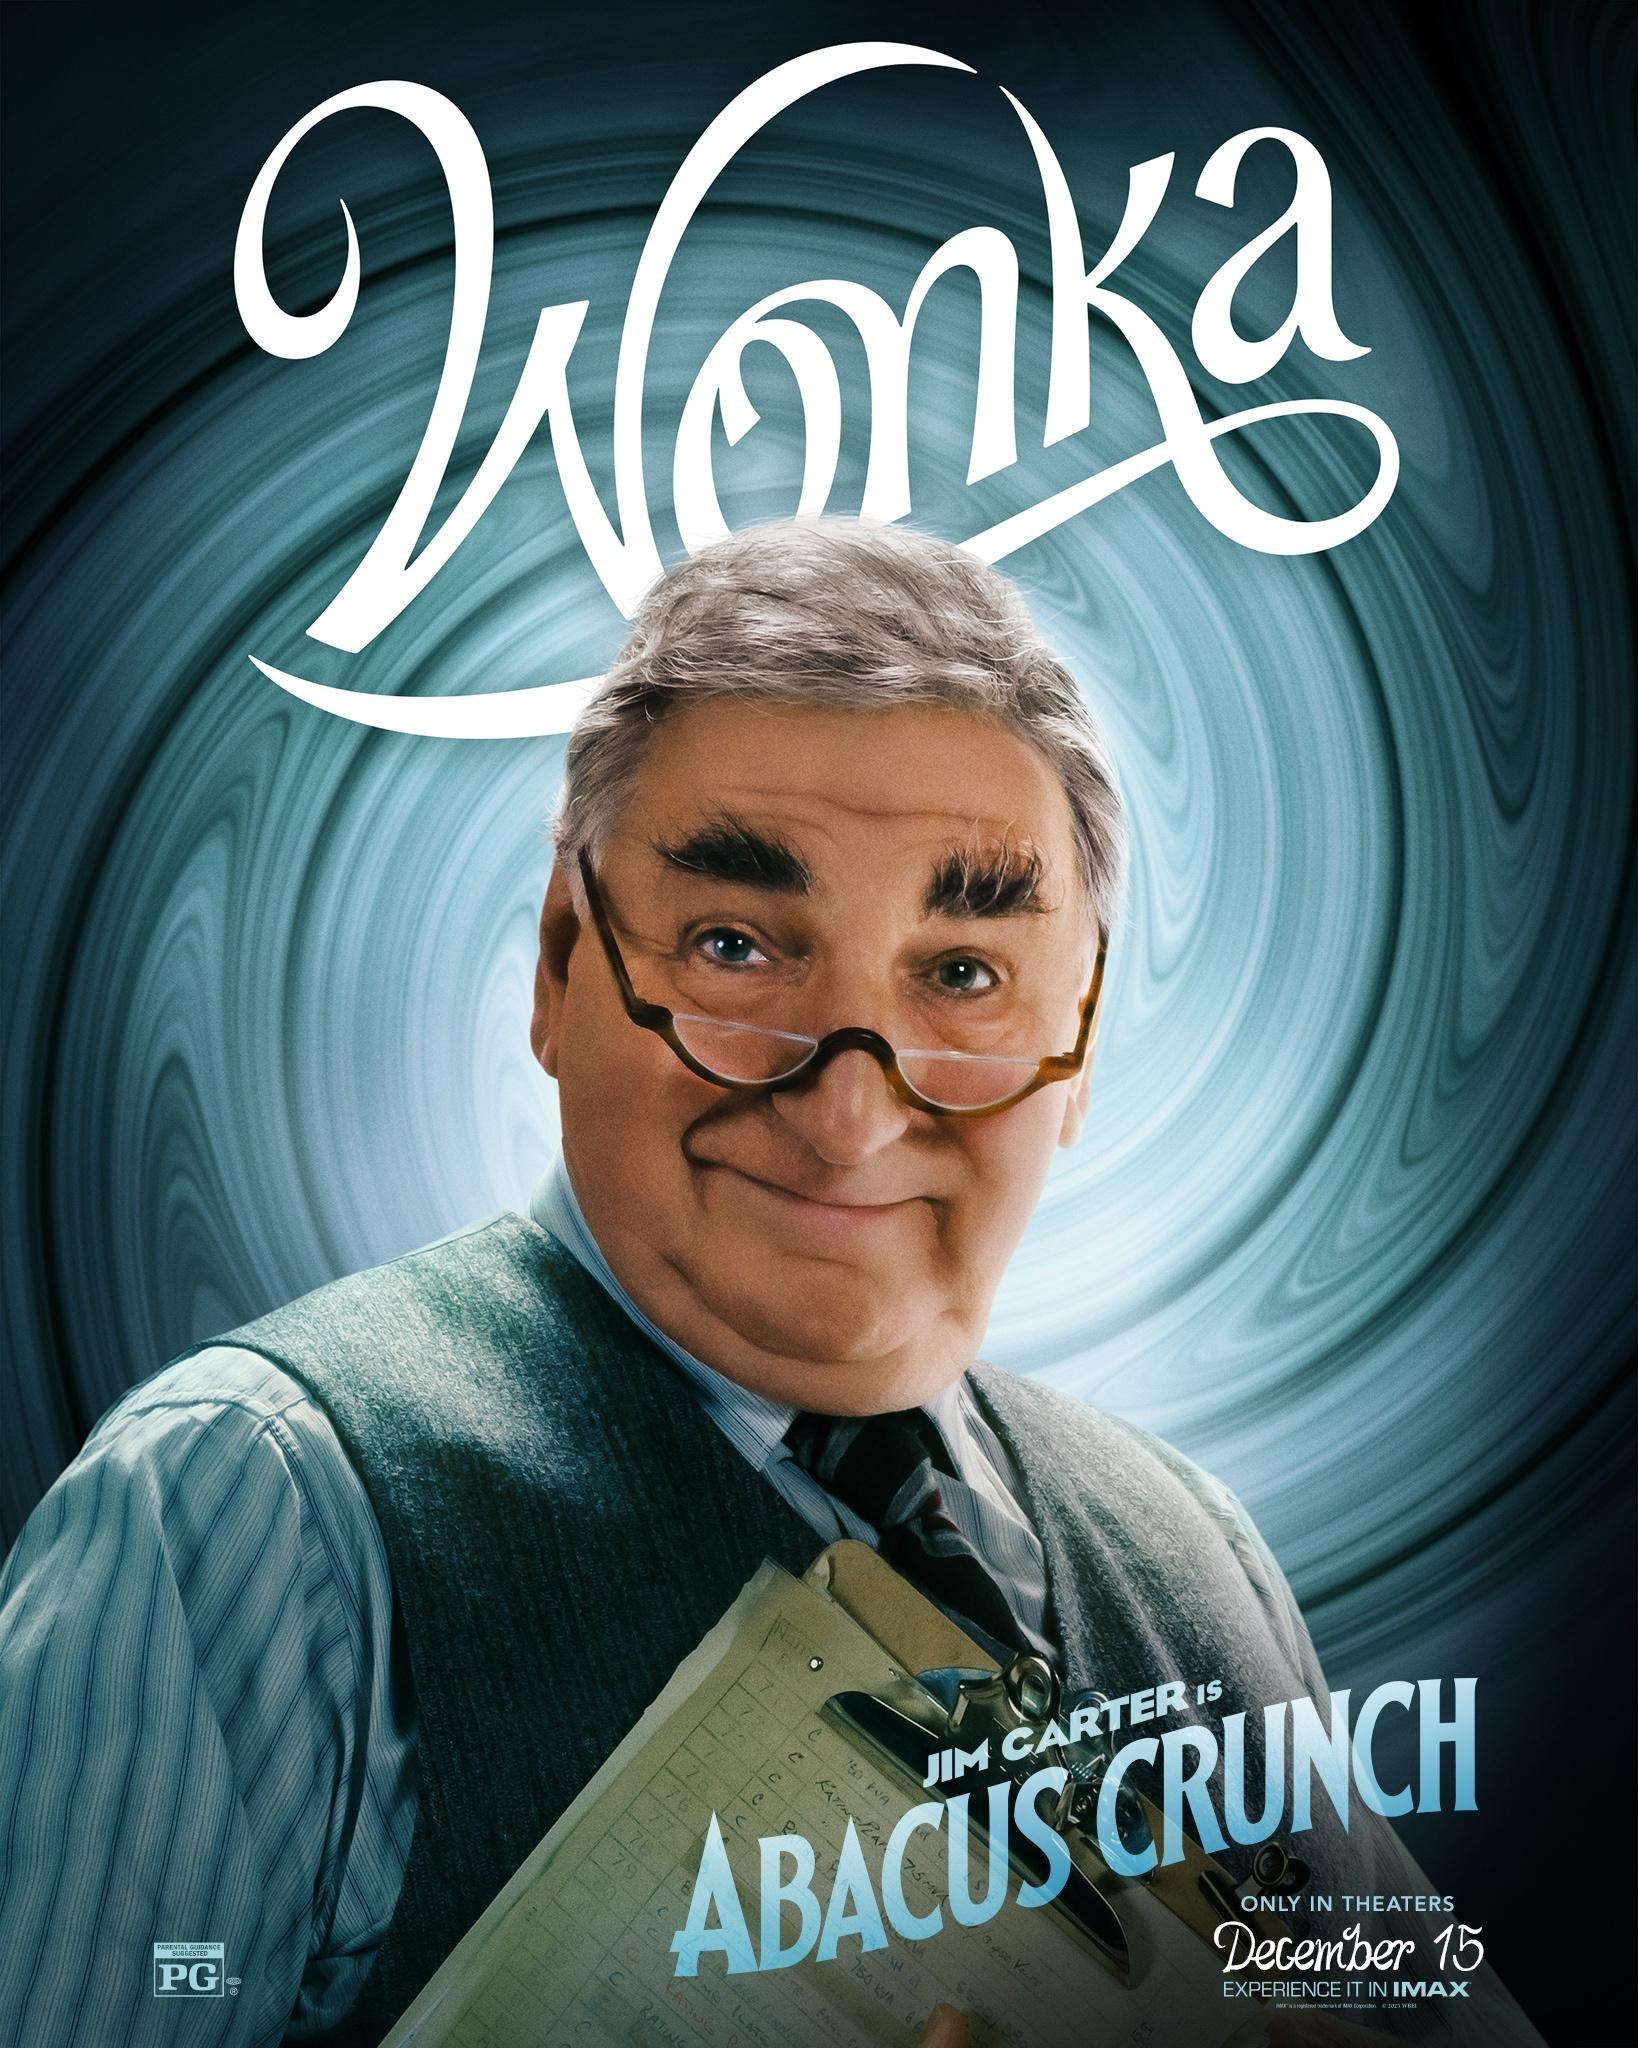 Mega Sized Movie Poster Image for Wonka (#6 of 22)